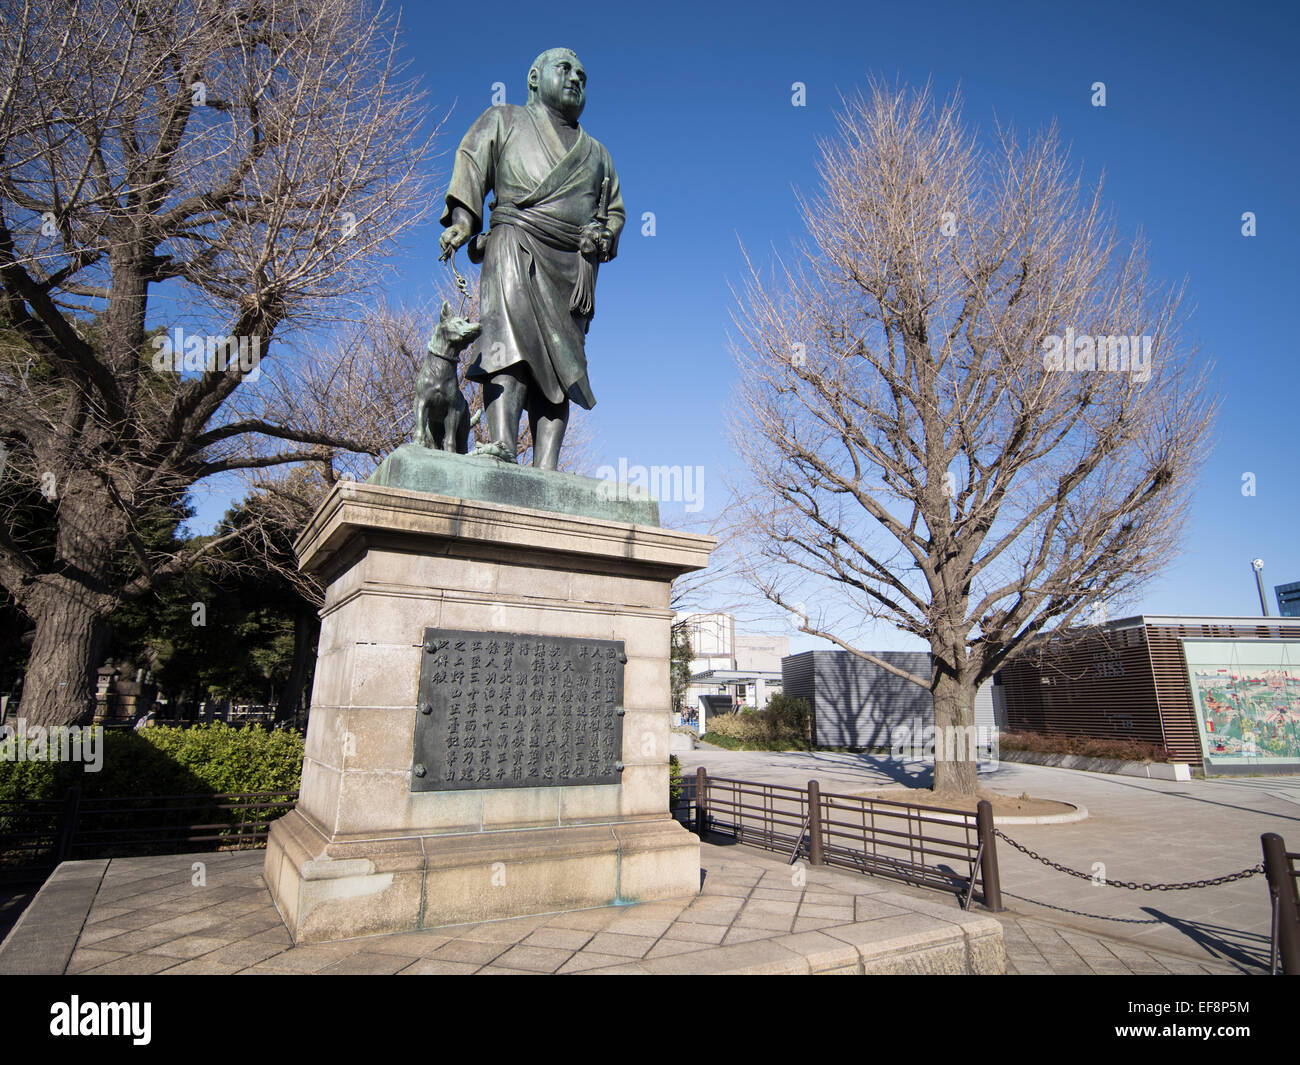 Statua di bronzo di Saigo Takamori ( samurai e politico ) presso il parco Ueno, Tokyo, Giappone Foto Stock